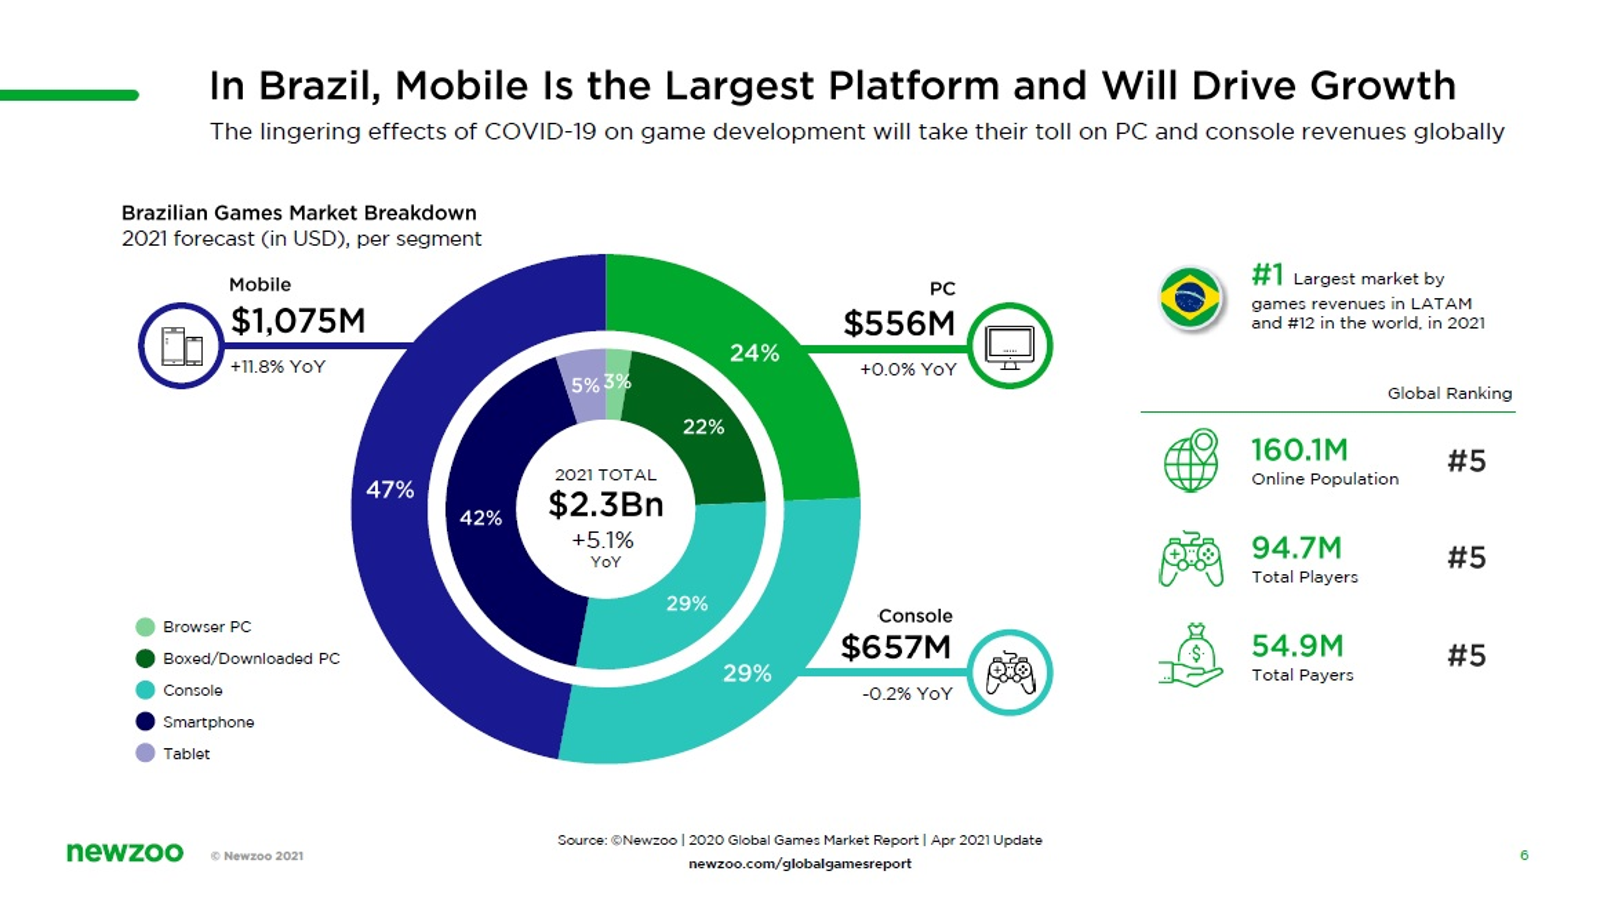 Mobile Gamer Brasil